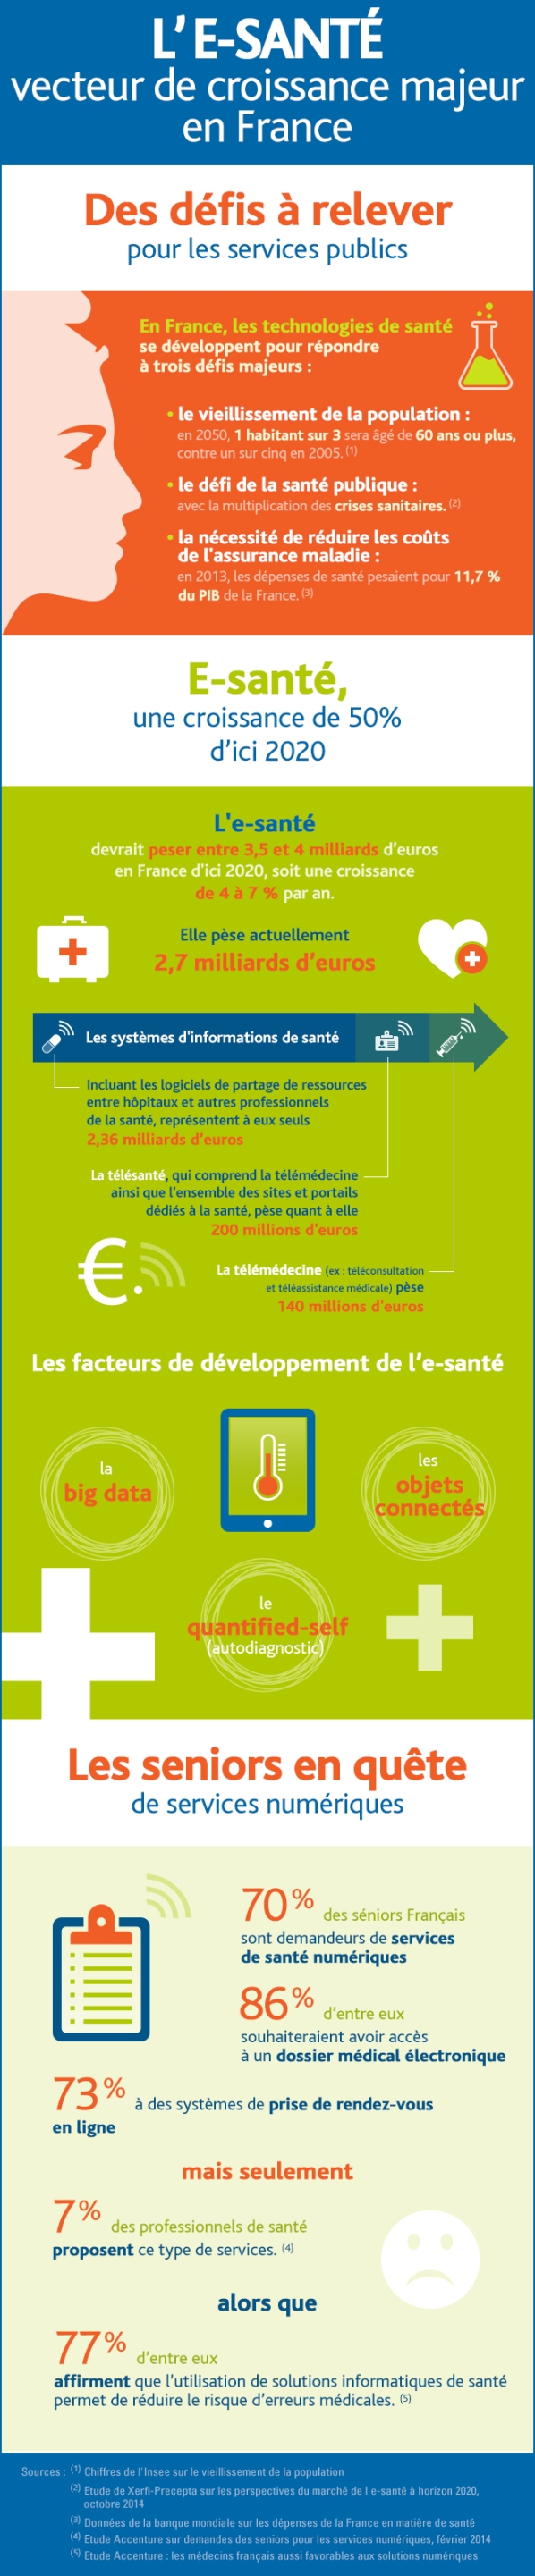 Infographie : le marché de la e-santé en France